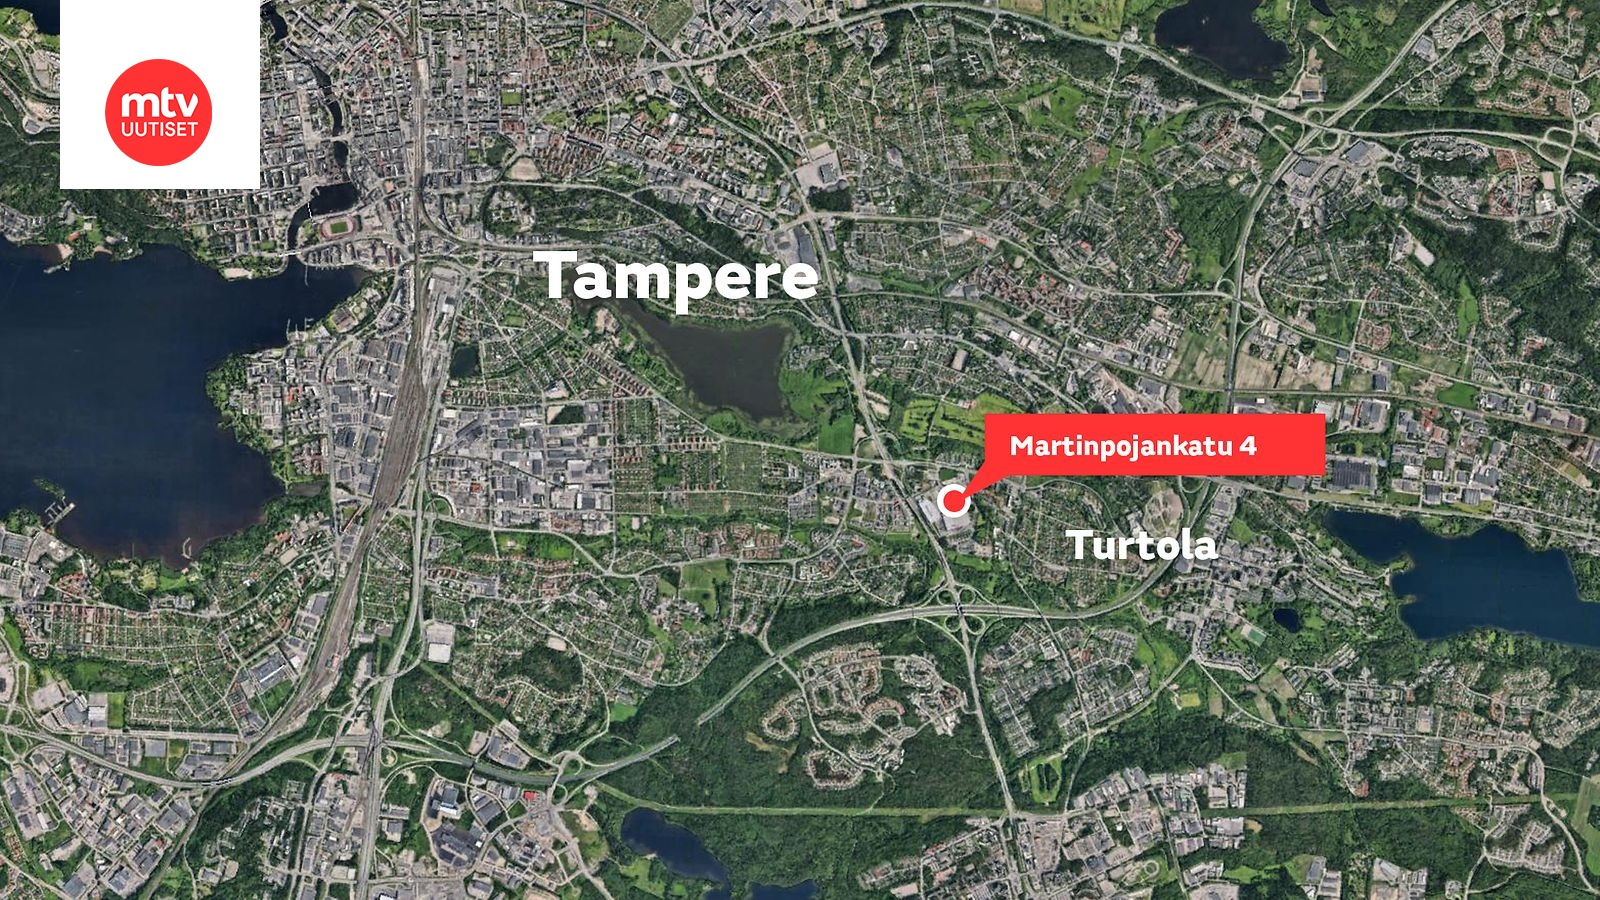 Väkivaltainen välikohtaus Citymarketissa Tampereella – yksi otettu kiinni,  poliisi niukkasanainen 